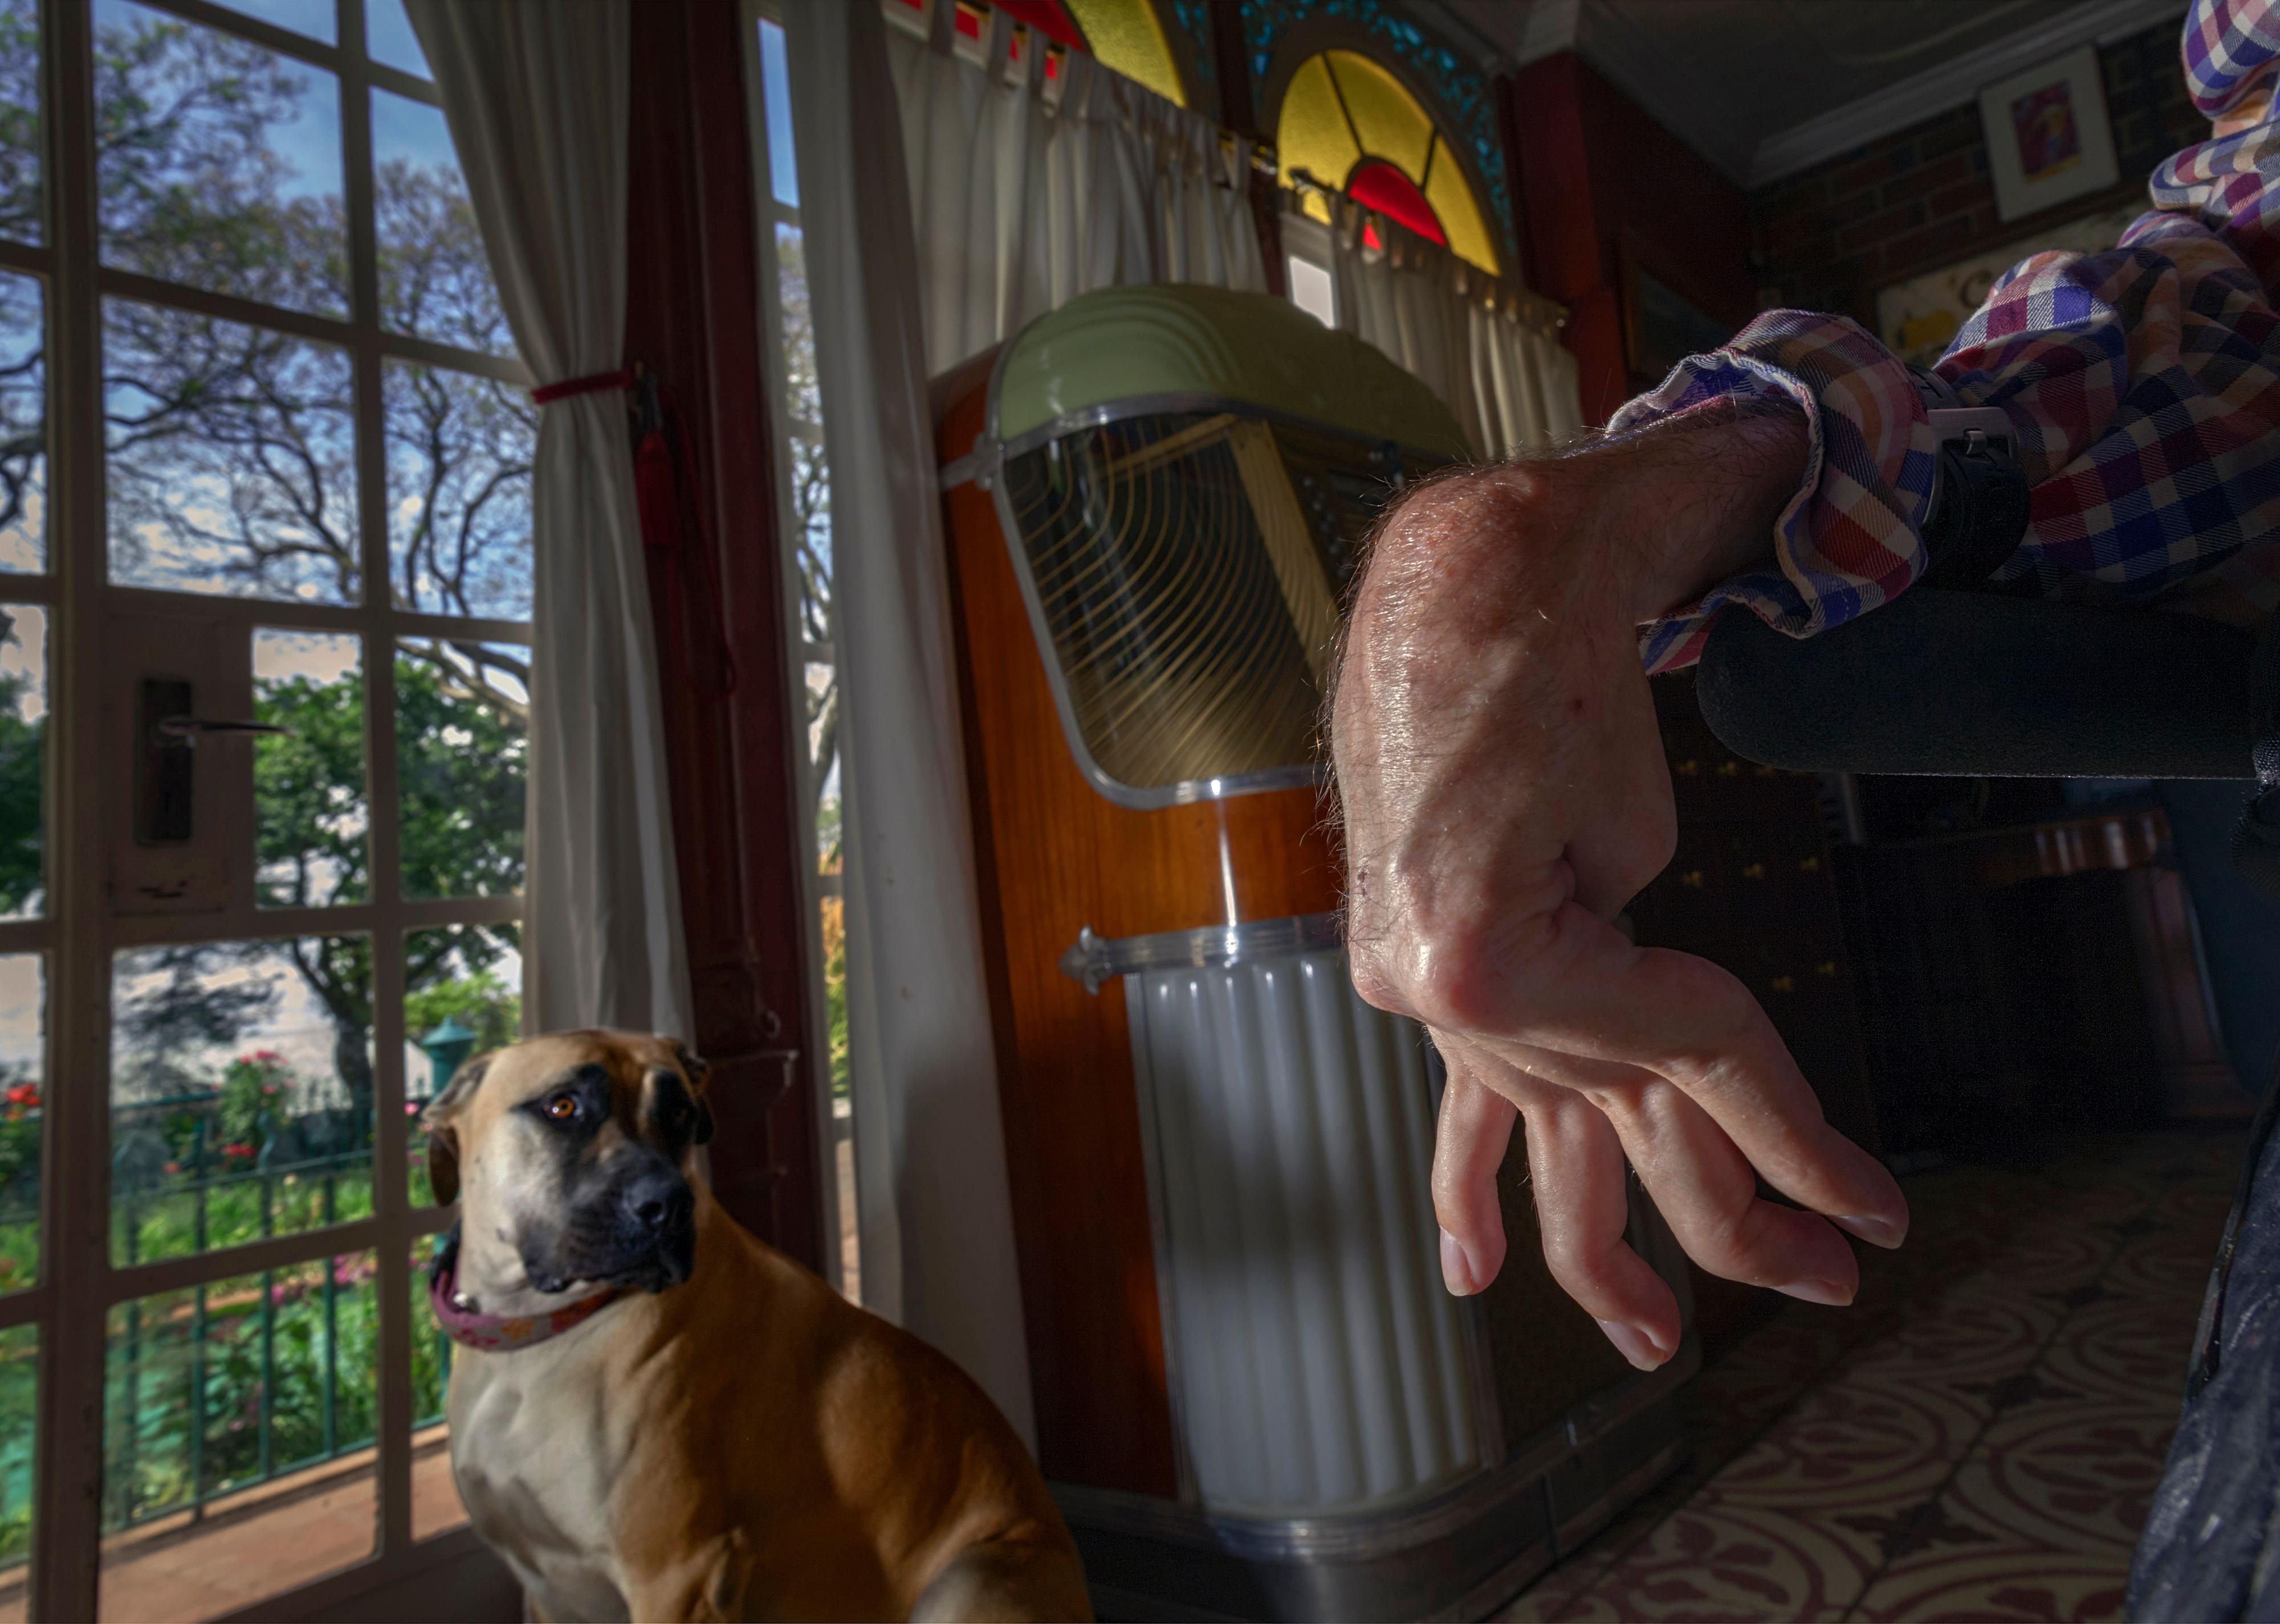 Ein großer brauner Hund sitzt an einem Fenster und schaut ins innere des Zimmers. Im Vordergrund die spastisch gelähmte Hand eines Menschen.